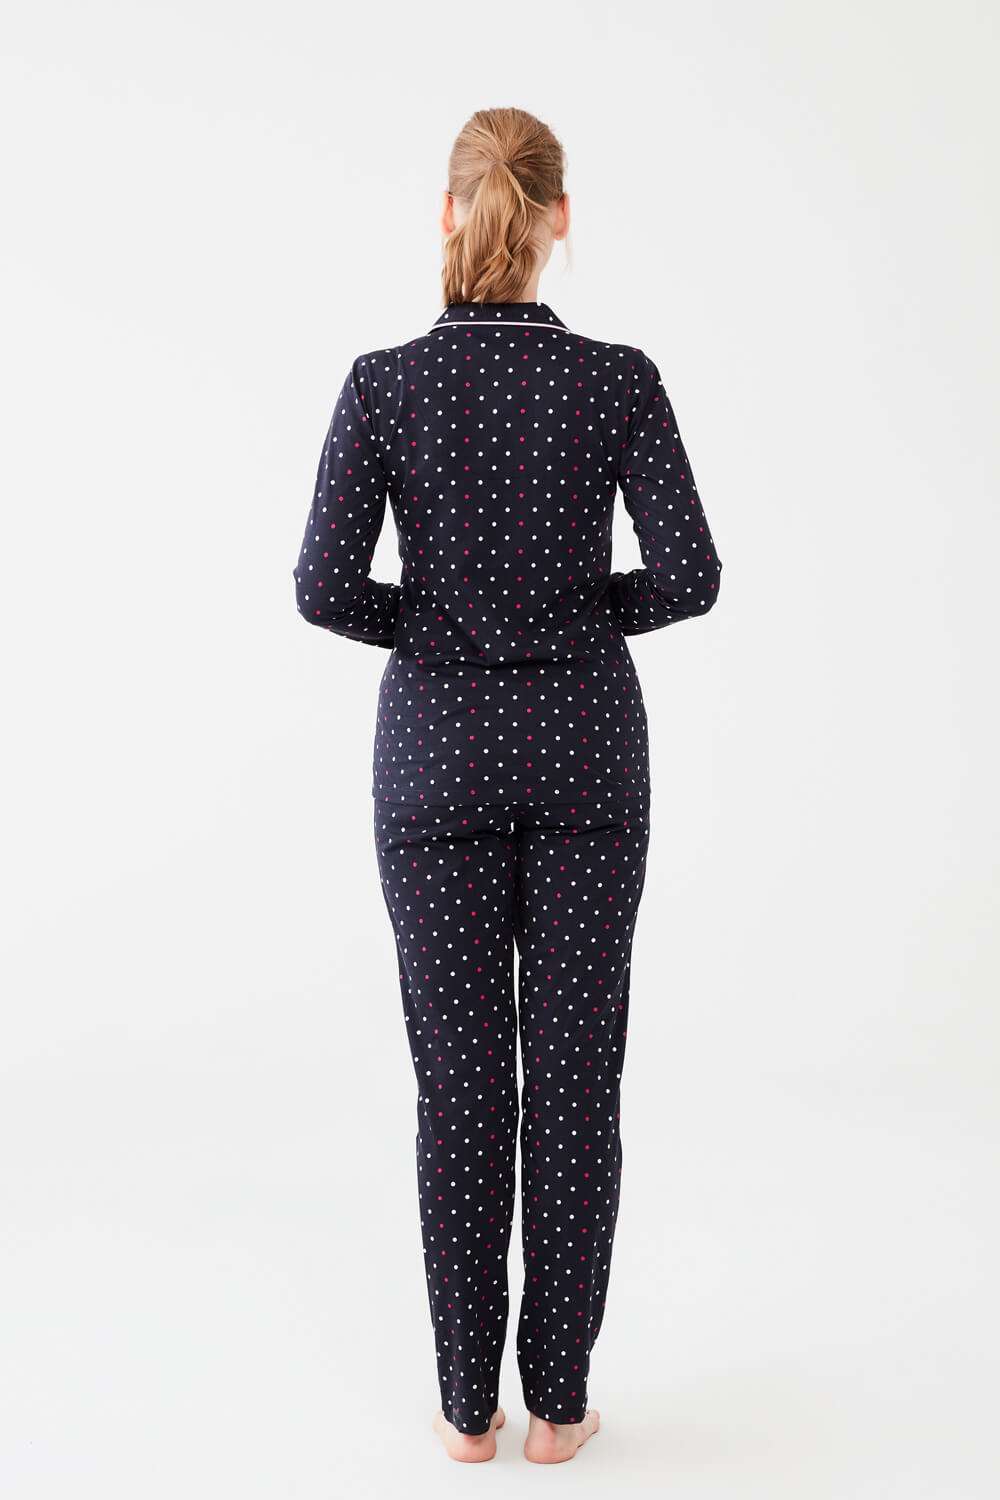 Mod Collection Kadın Lacivert Boydan Patlı Pijama Takımı |  Modcollection.com.tr